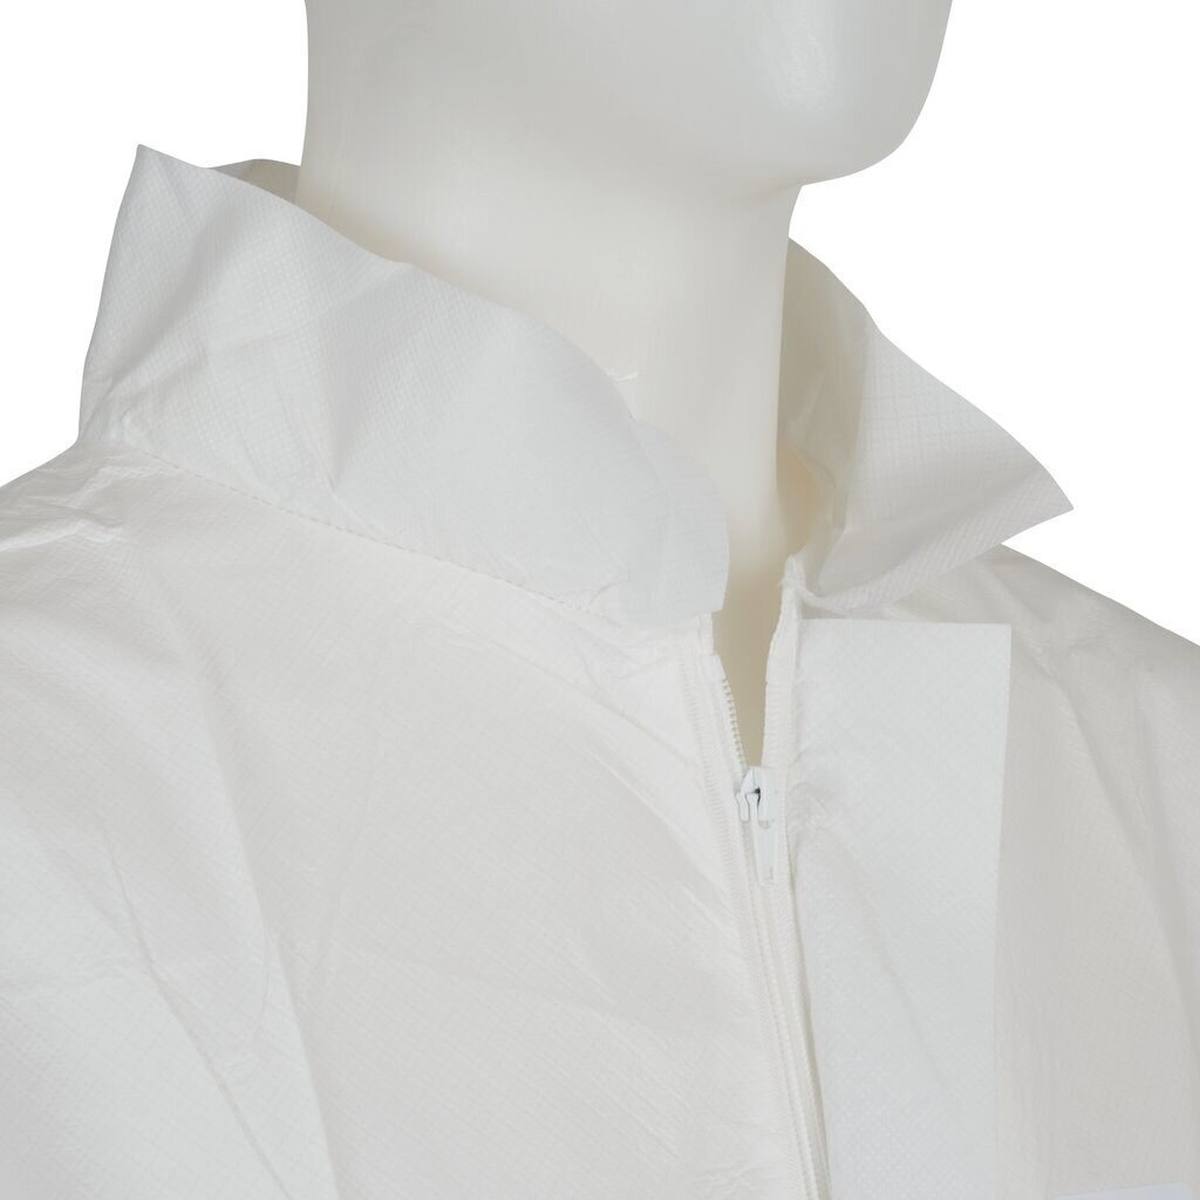 cappotto 3M 4440, bianco, taglia 3XL, particolarmente traspirante, molto leggero, con zip, polsini in maglia